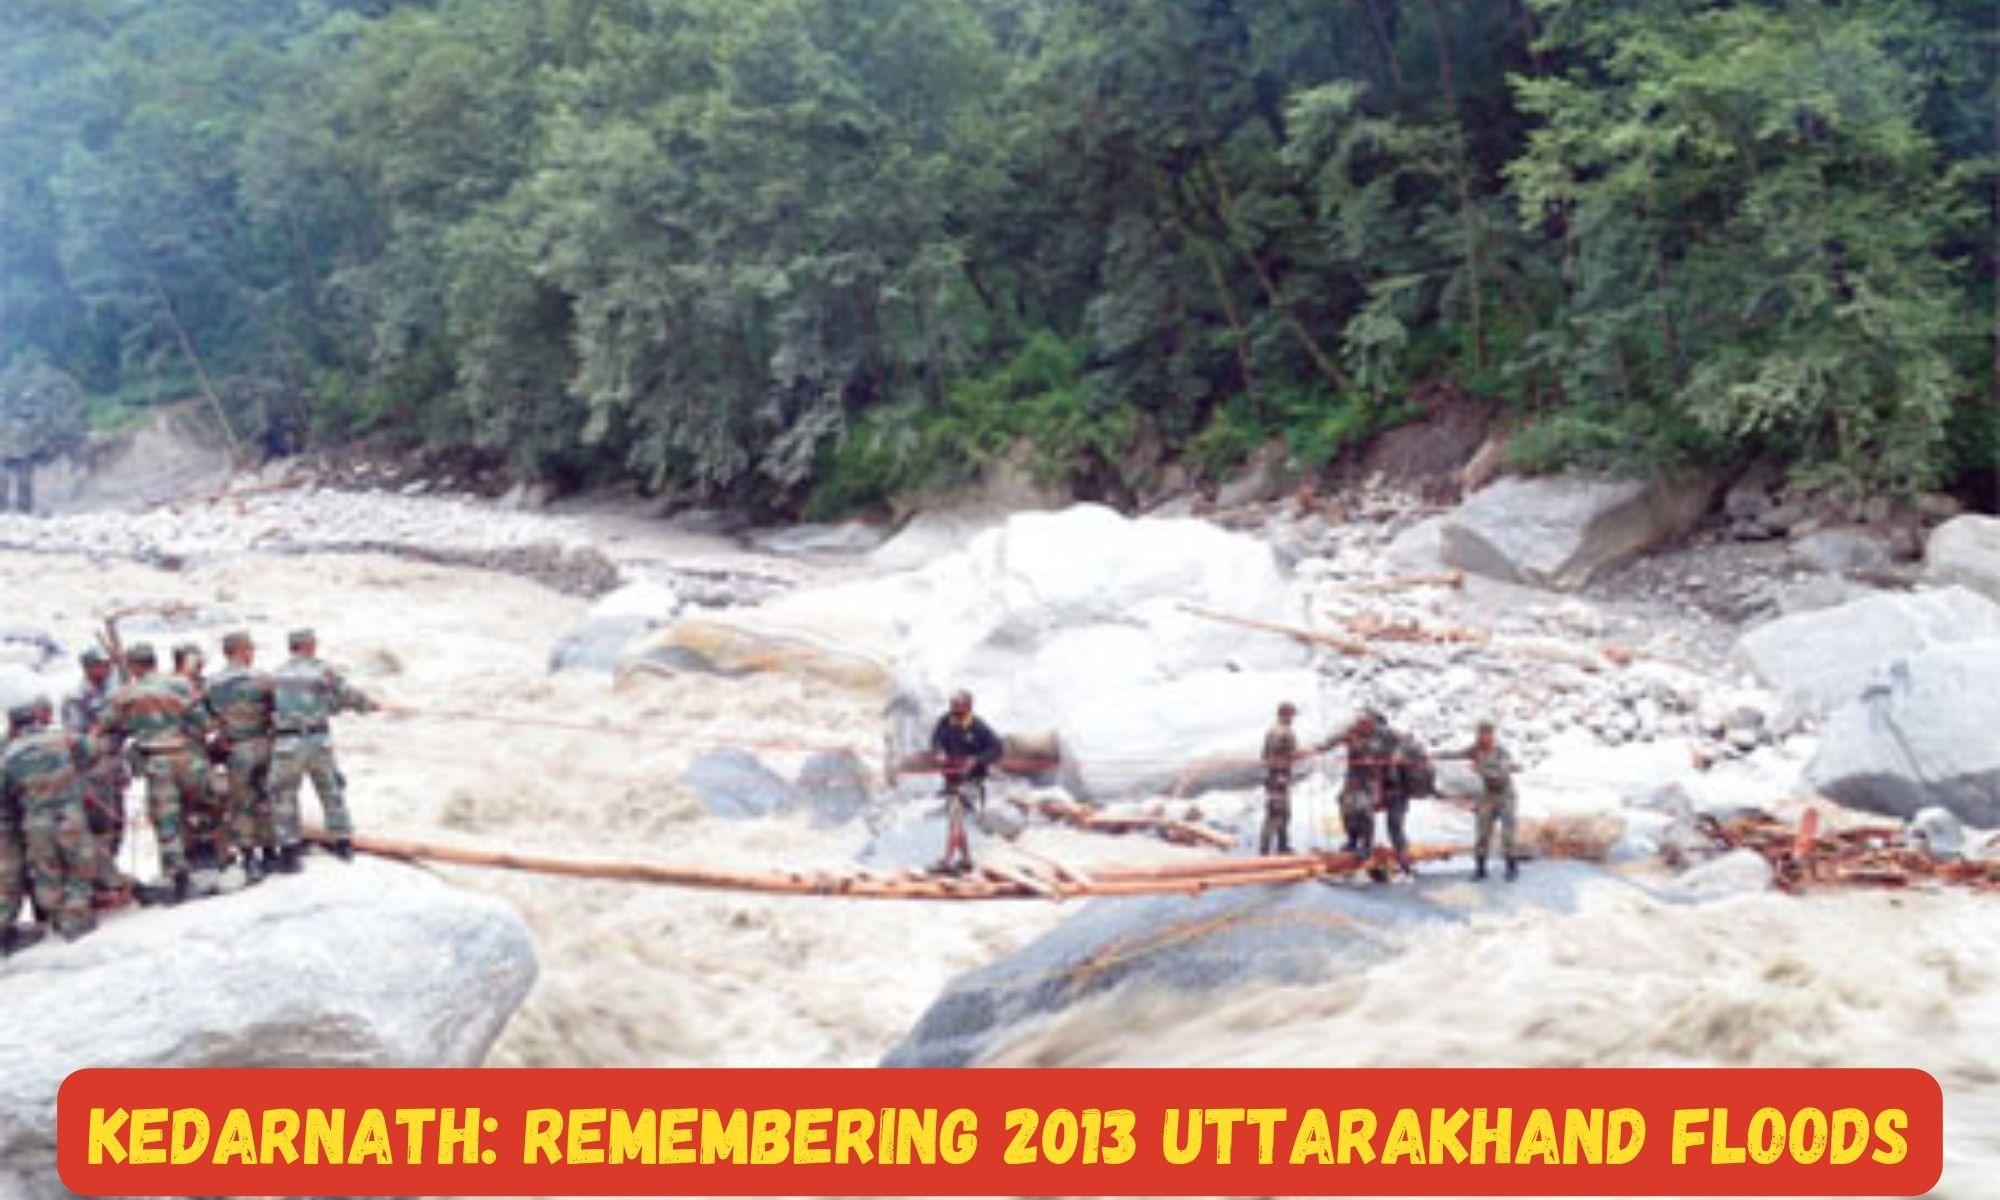 Kedarnath: Remembering 2013 Uttarakhand Floods